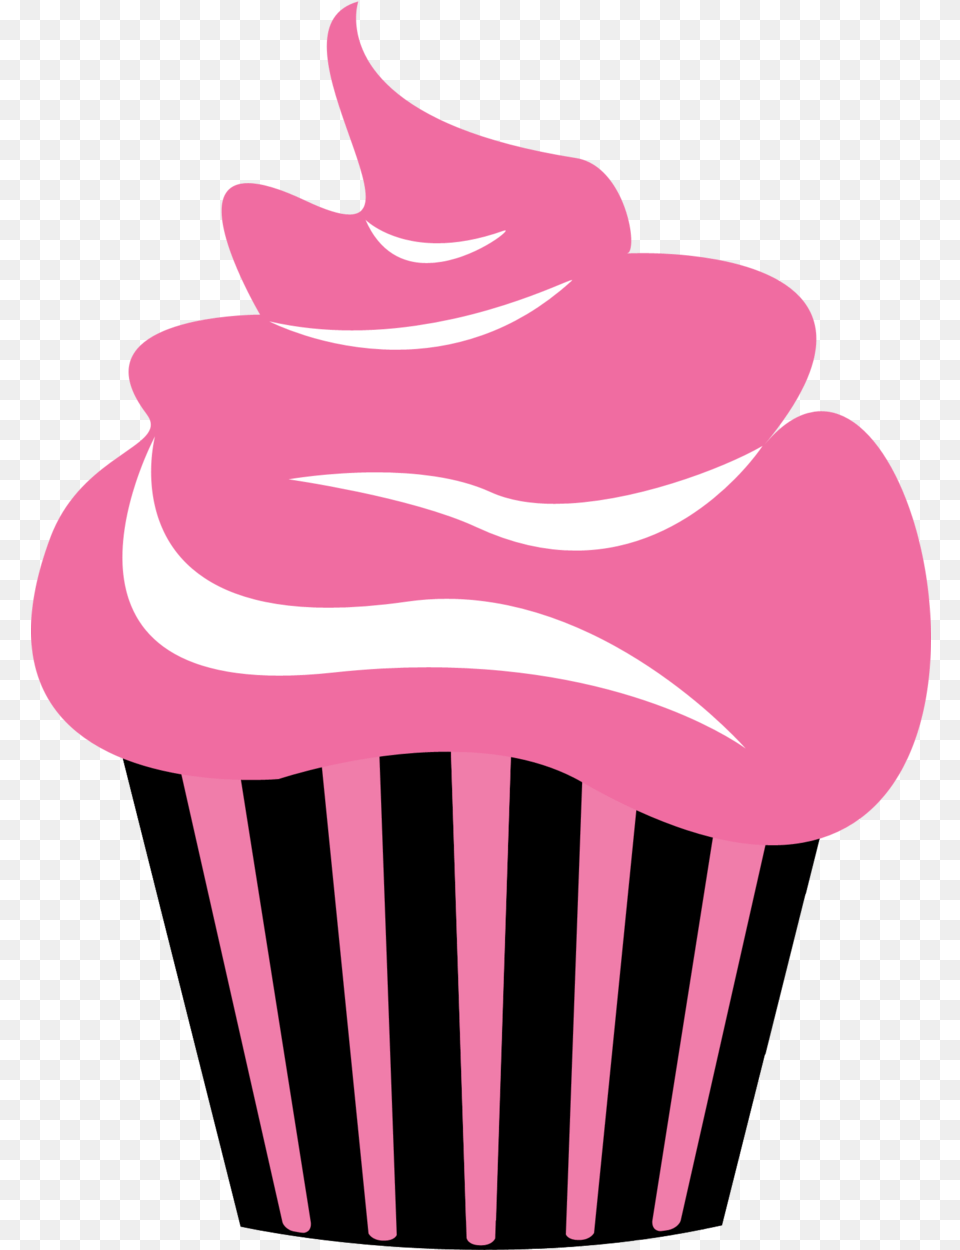 Download Hd Cupcake Logos Clipart Free Logo Cupcake Icon, Cake, Cream, Dessert, Food Png